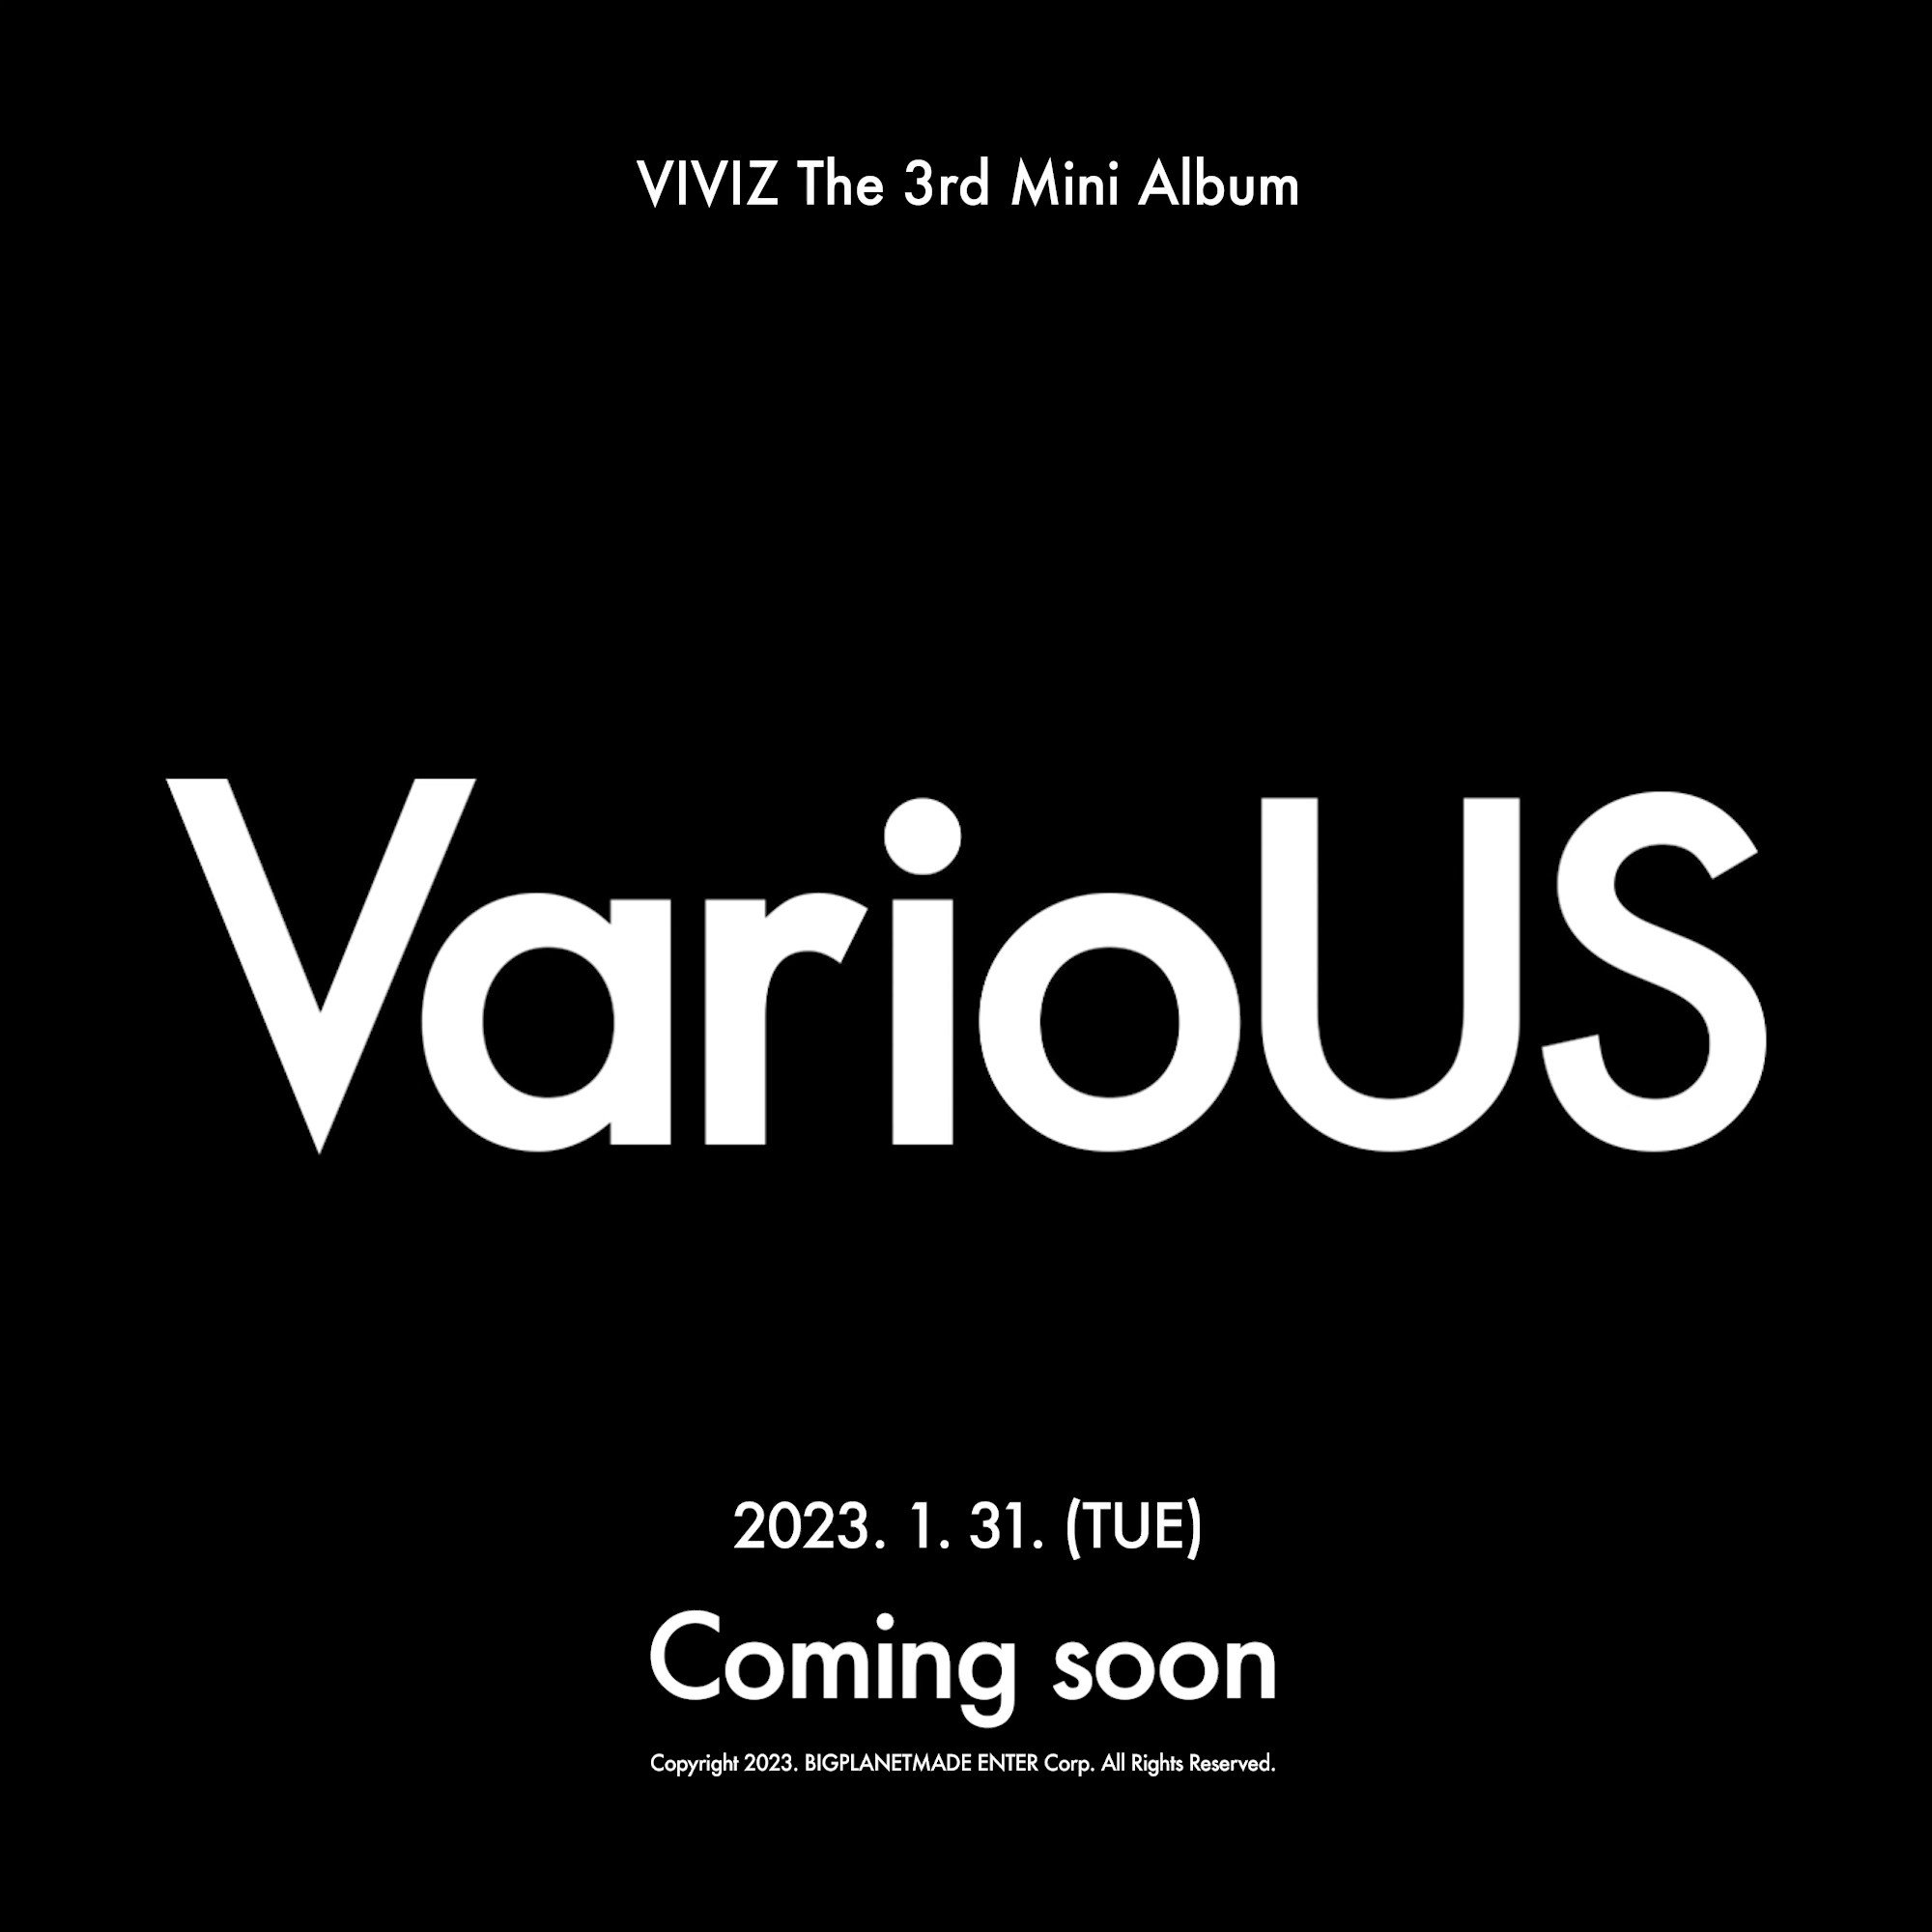 [情報] VIVIZ 迷你3輯 'VarioUS' 1/31 回歸